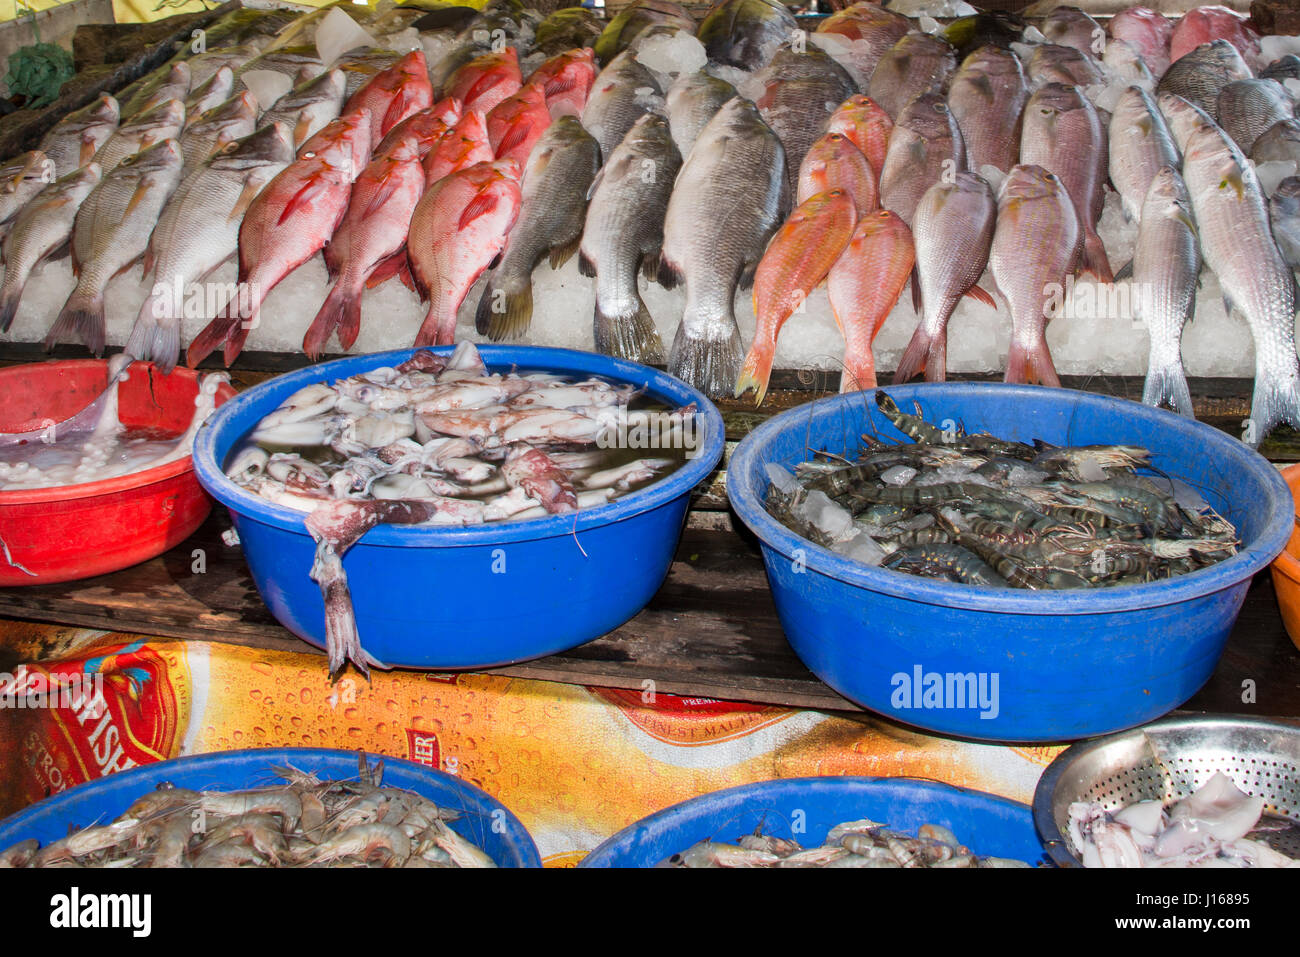 India, stato del Kerala, la città portuale di Cochin. Waterfront mercato del pesce, pesce fresco dettaglio. Foto Stock